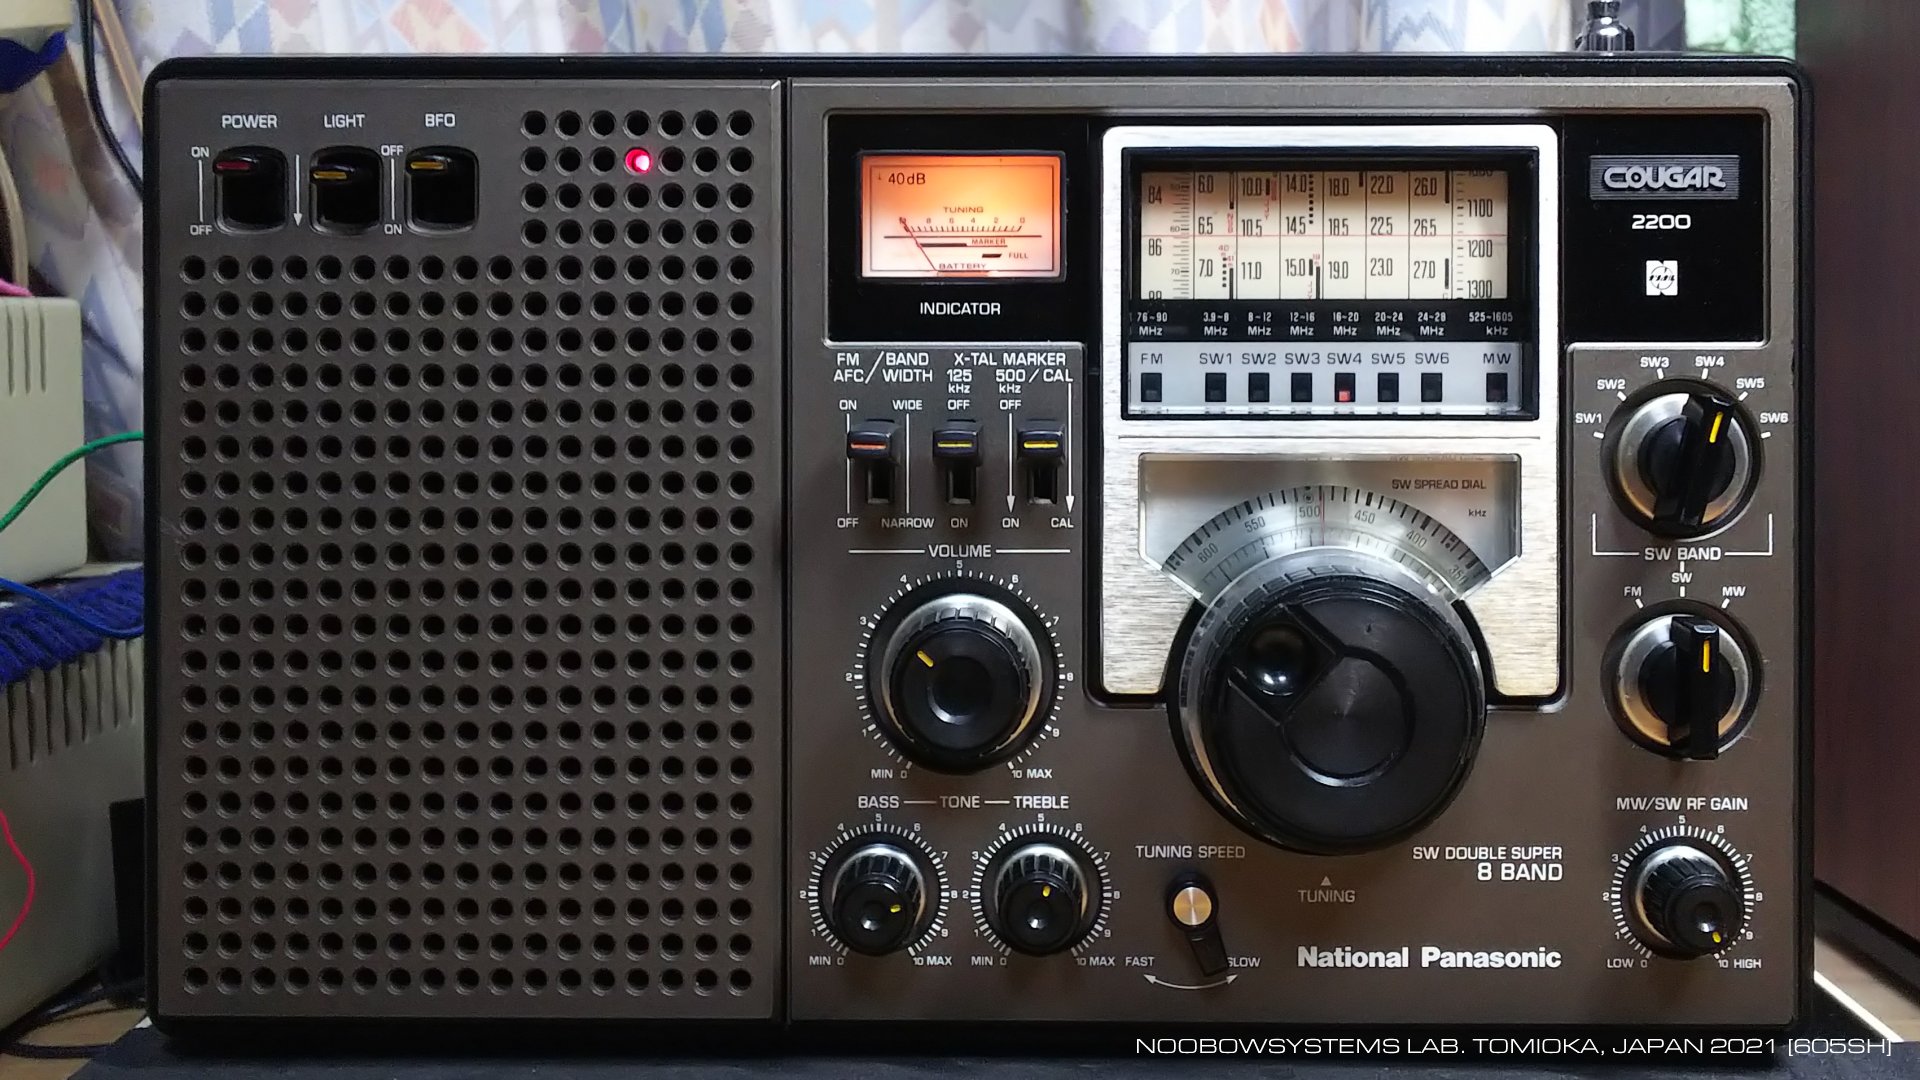 ナショナル Panasonic BCL ラジオ クーガー2200 かなりレアラジオ - その他